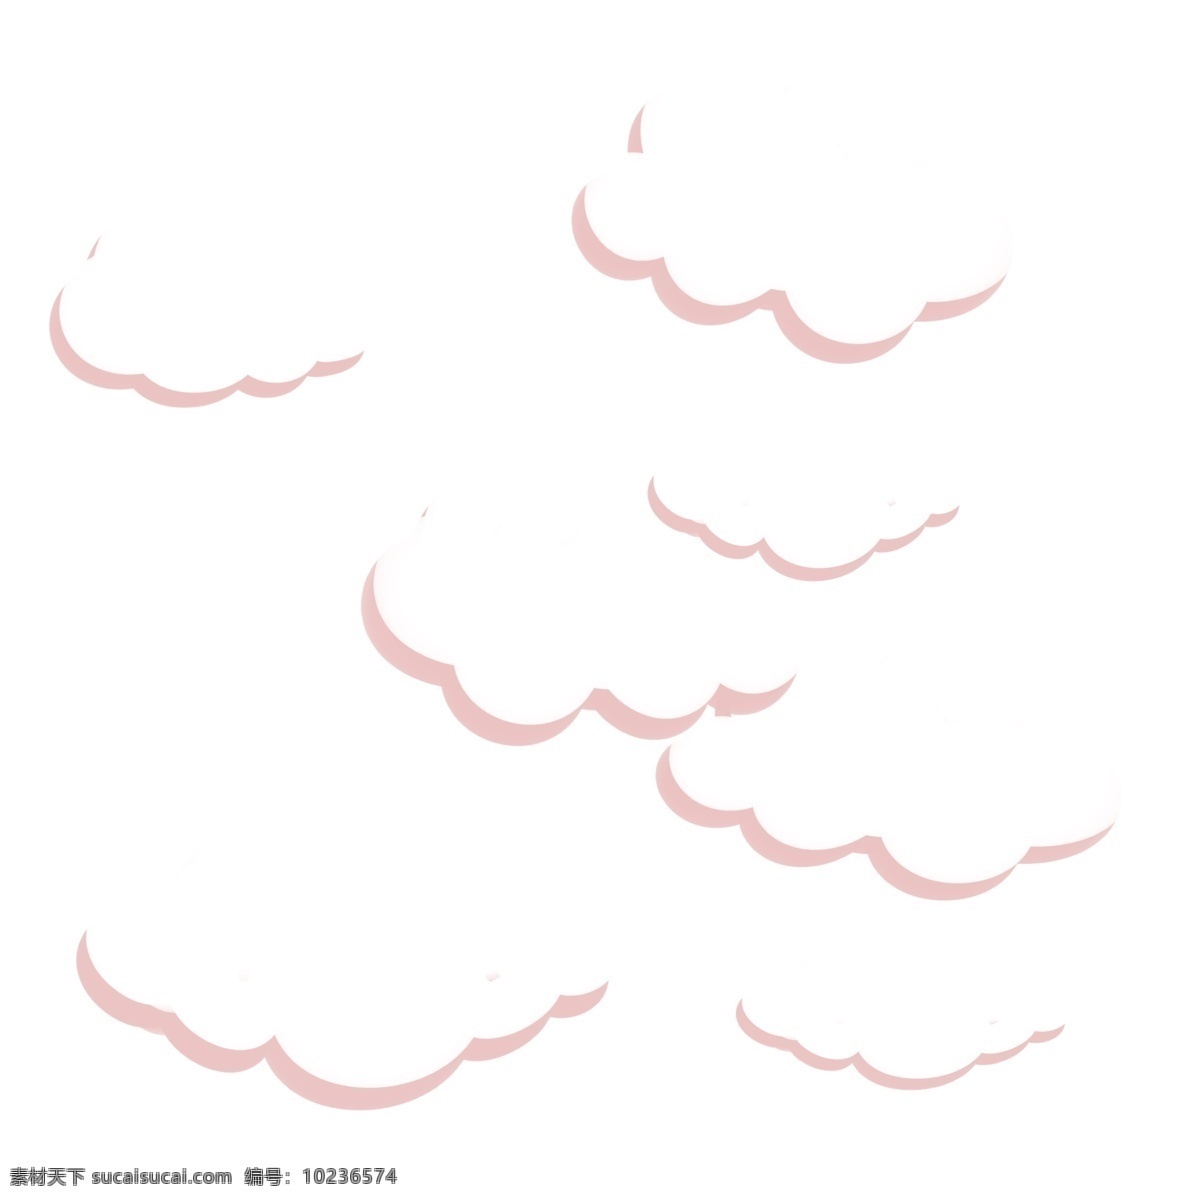 天空 云朵 手绘 系列 蓝天 柔软 云纹 叠加 笑脸 装饰 贴画 白云朵朵 天边的 蓝色云彩 风格 童话风